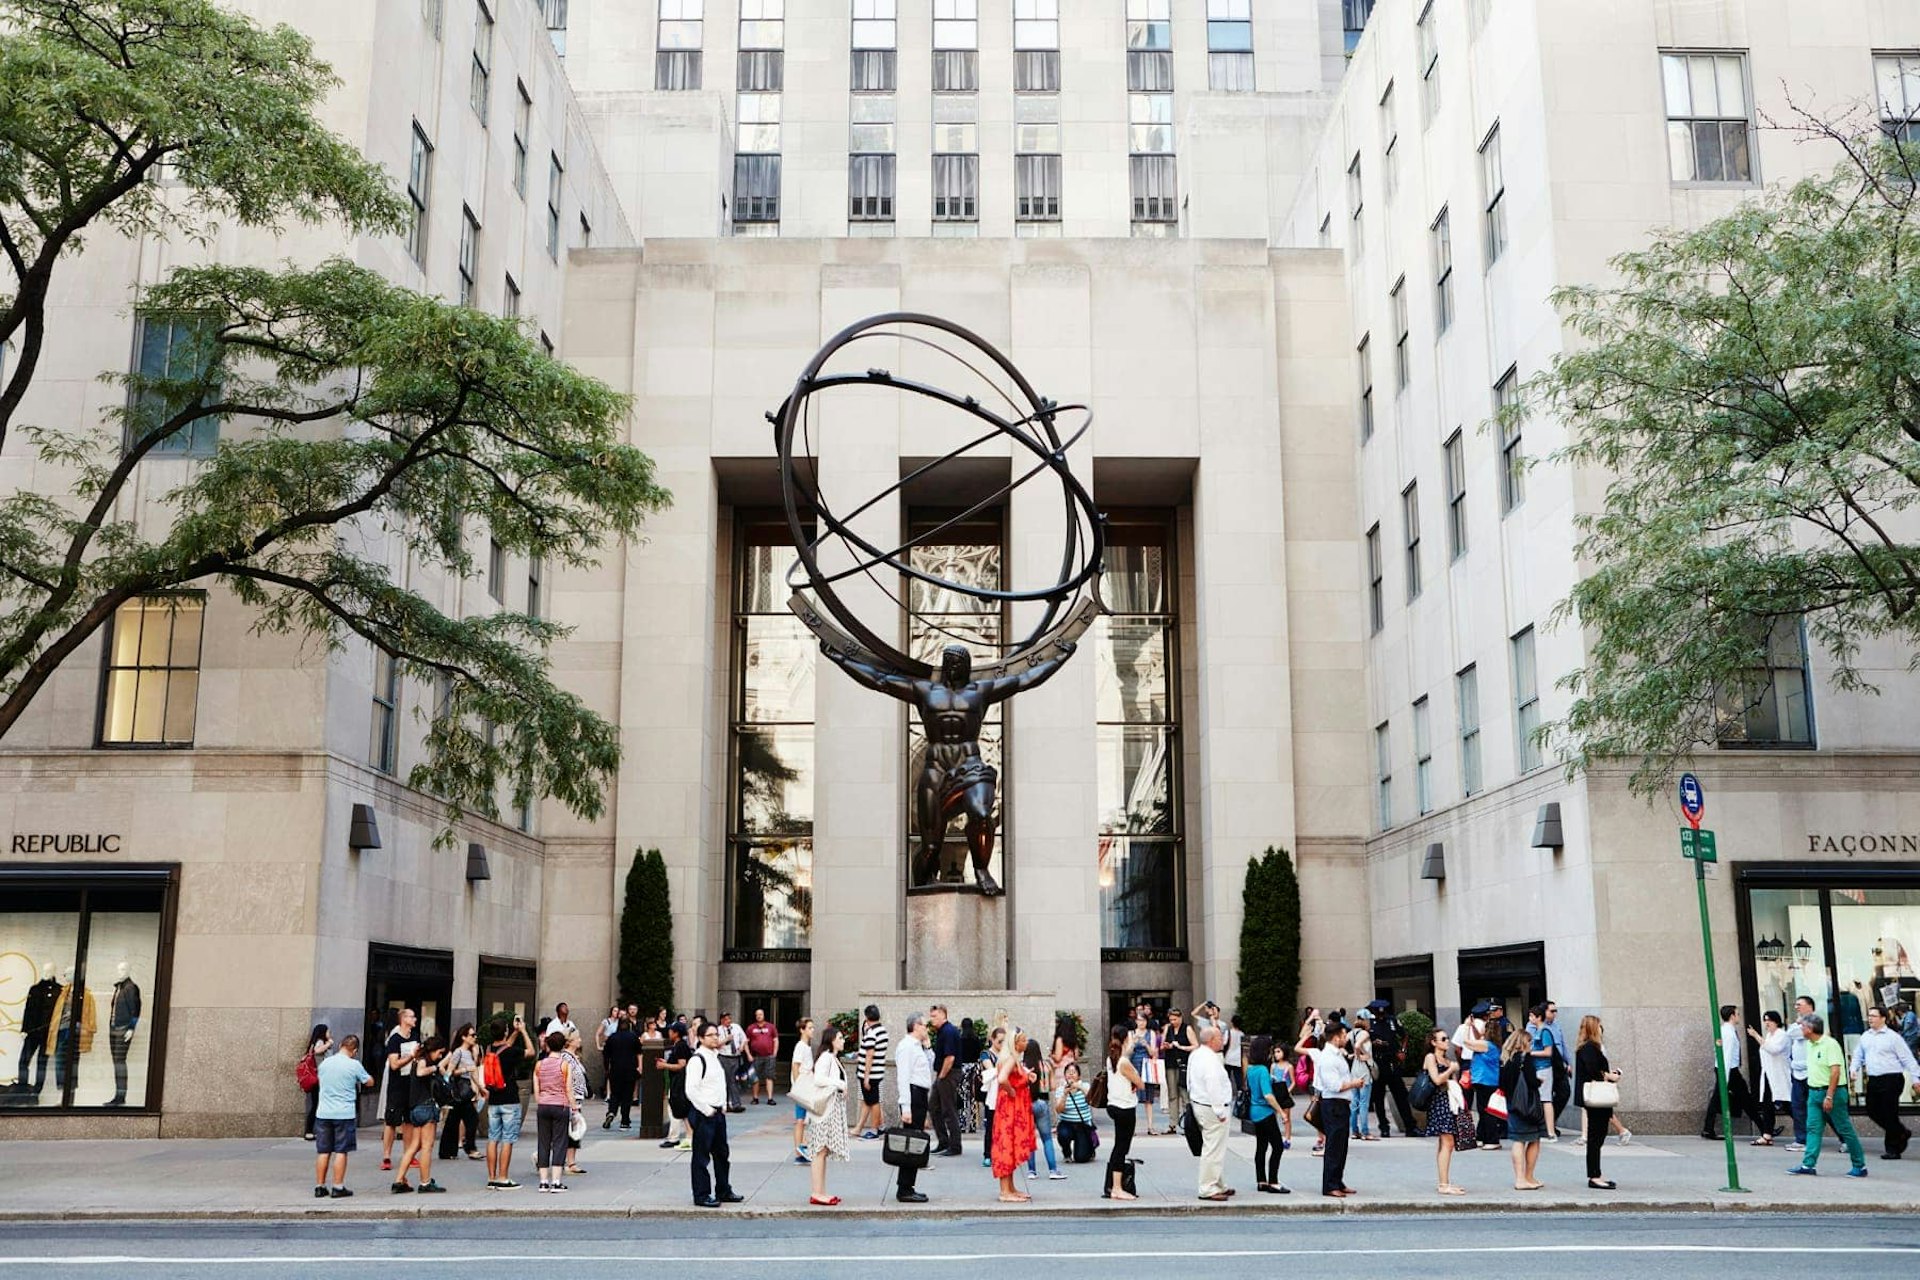 Sculpture outside Rockefeller Center, New York